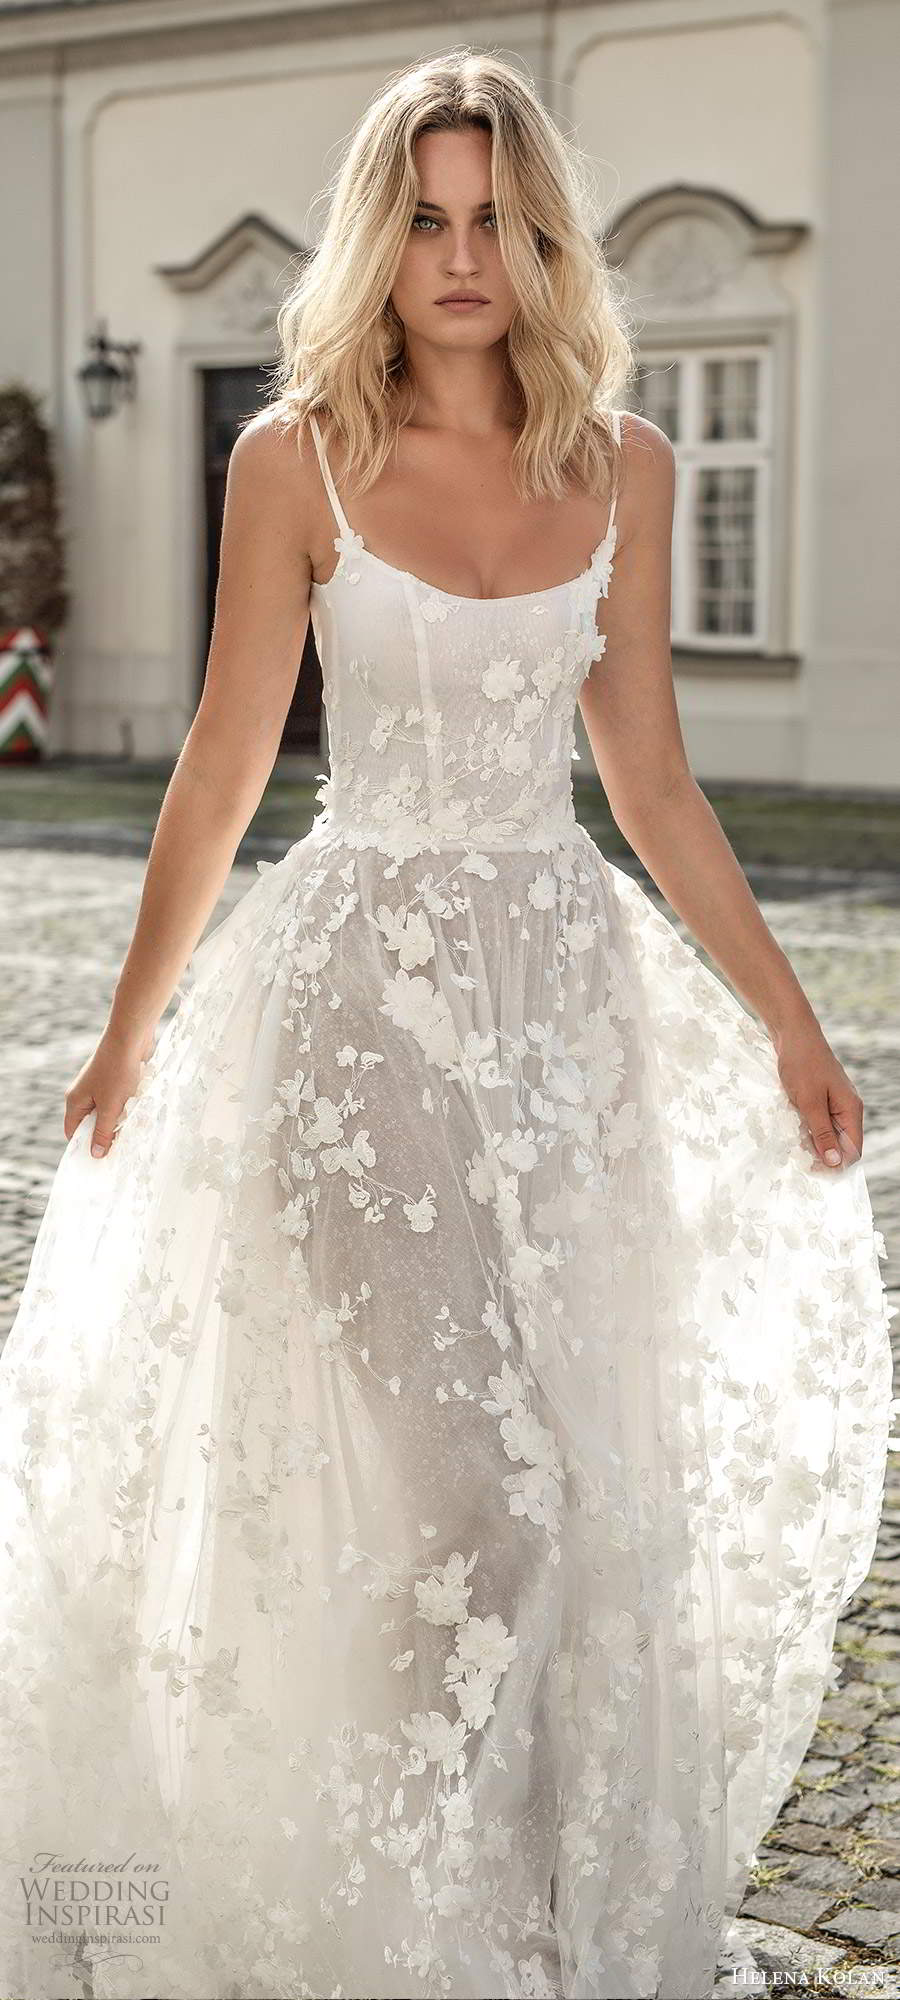 helena kolan wedding dress price